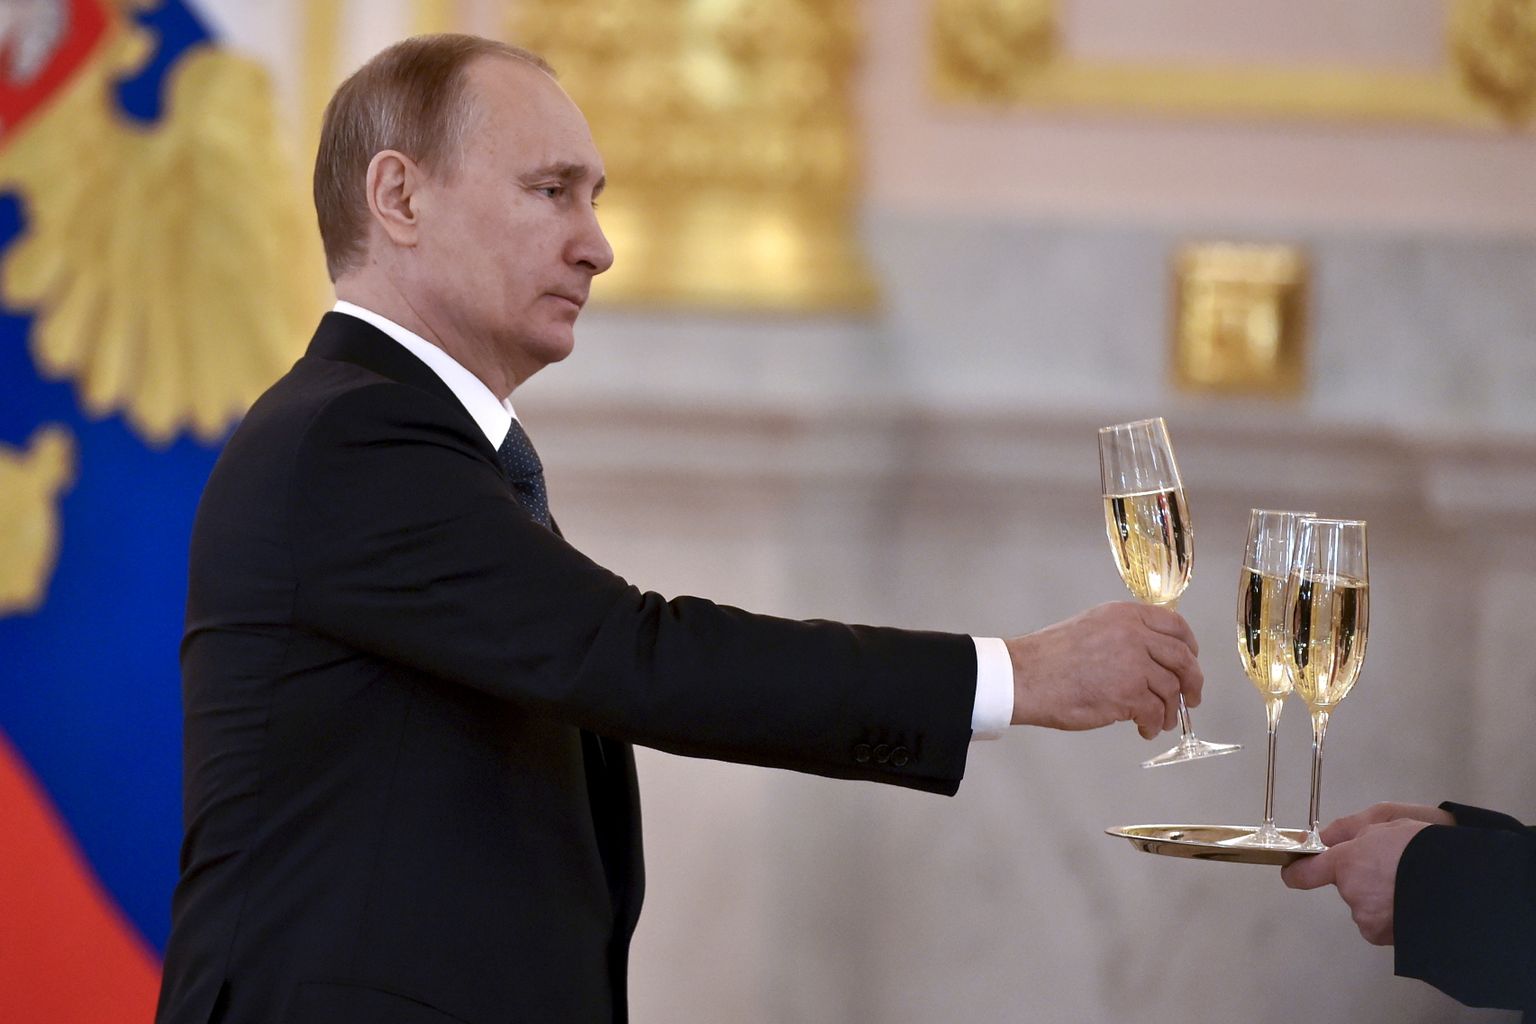 Venemaa president Vladimir Putin tõstmas vahuveiniklaasi 20. aprillil 2016 Kremlis teiste riikide suursaadikute volikirjade vastuvõtmise tseremoonial